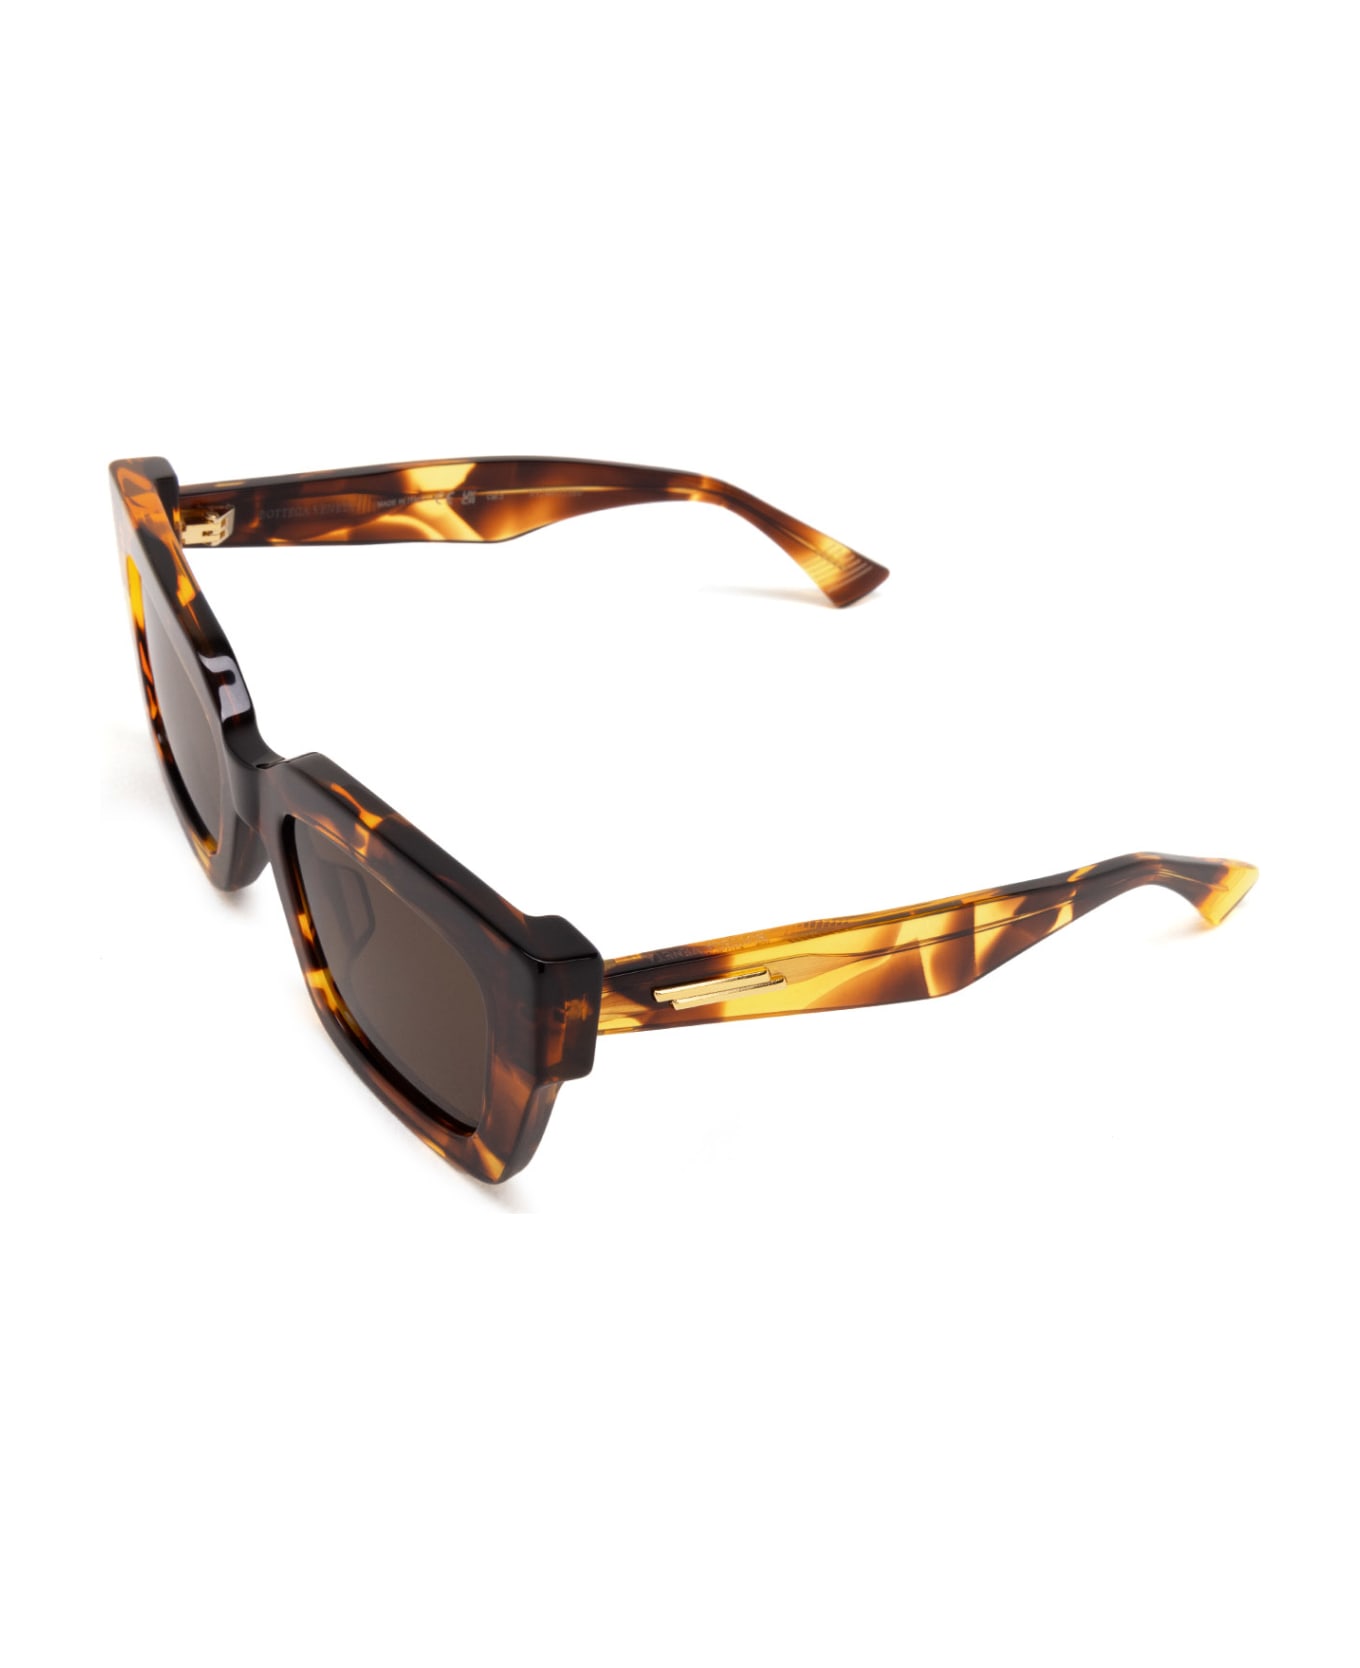 Bottega Veneta Eyewear Bv1212s Havana Sunglasses - Havana